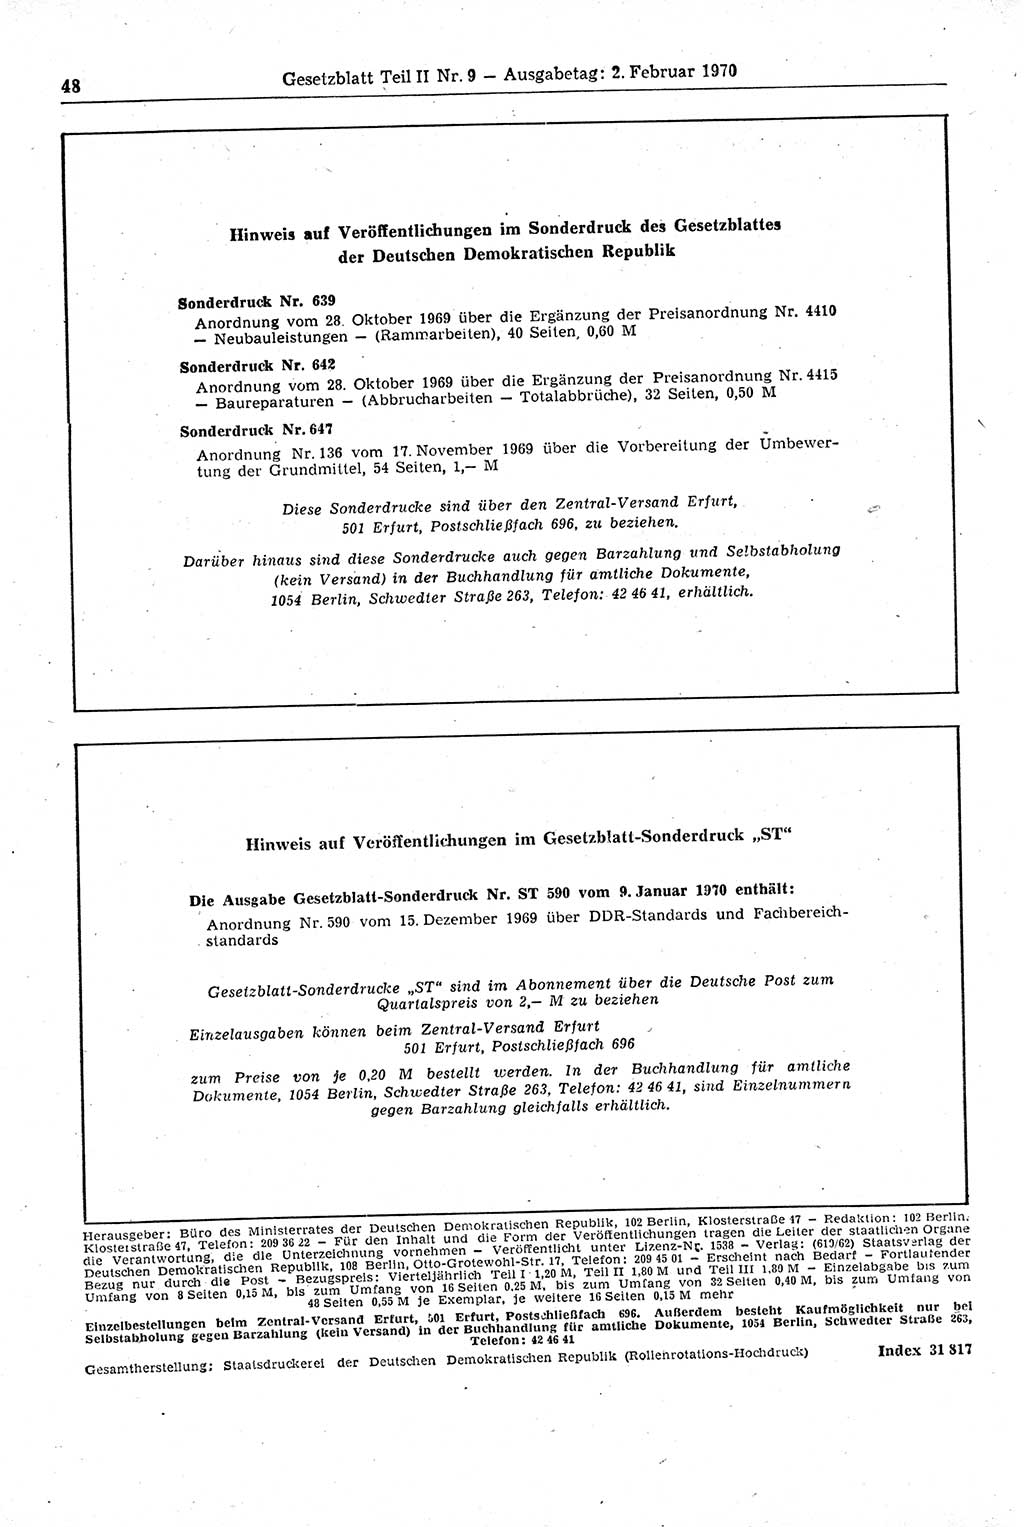 Gesetzblatt (GBl.) der Deutschen Demokratischen Republik (DDR) Teil ⅠⅠ 1970, Seite 48 (GBl. DDR ⅠⅠ 1970, S. 48)